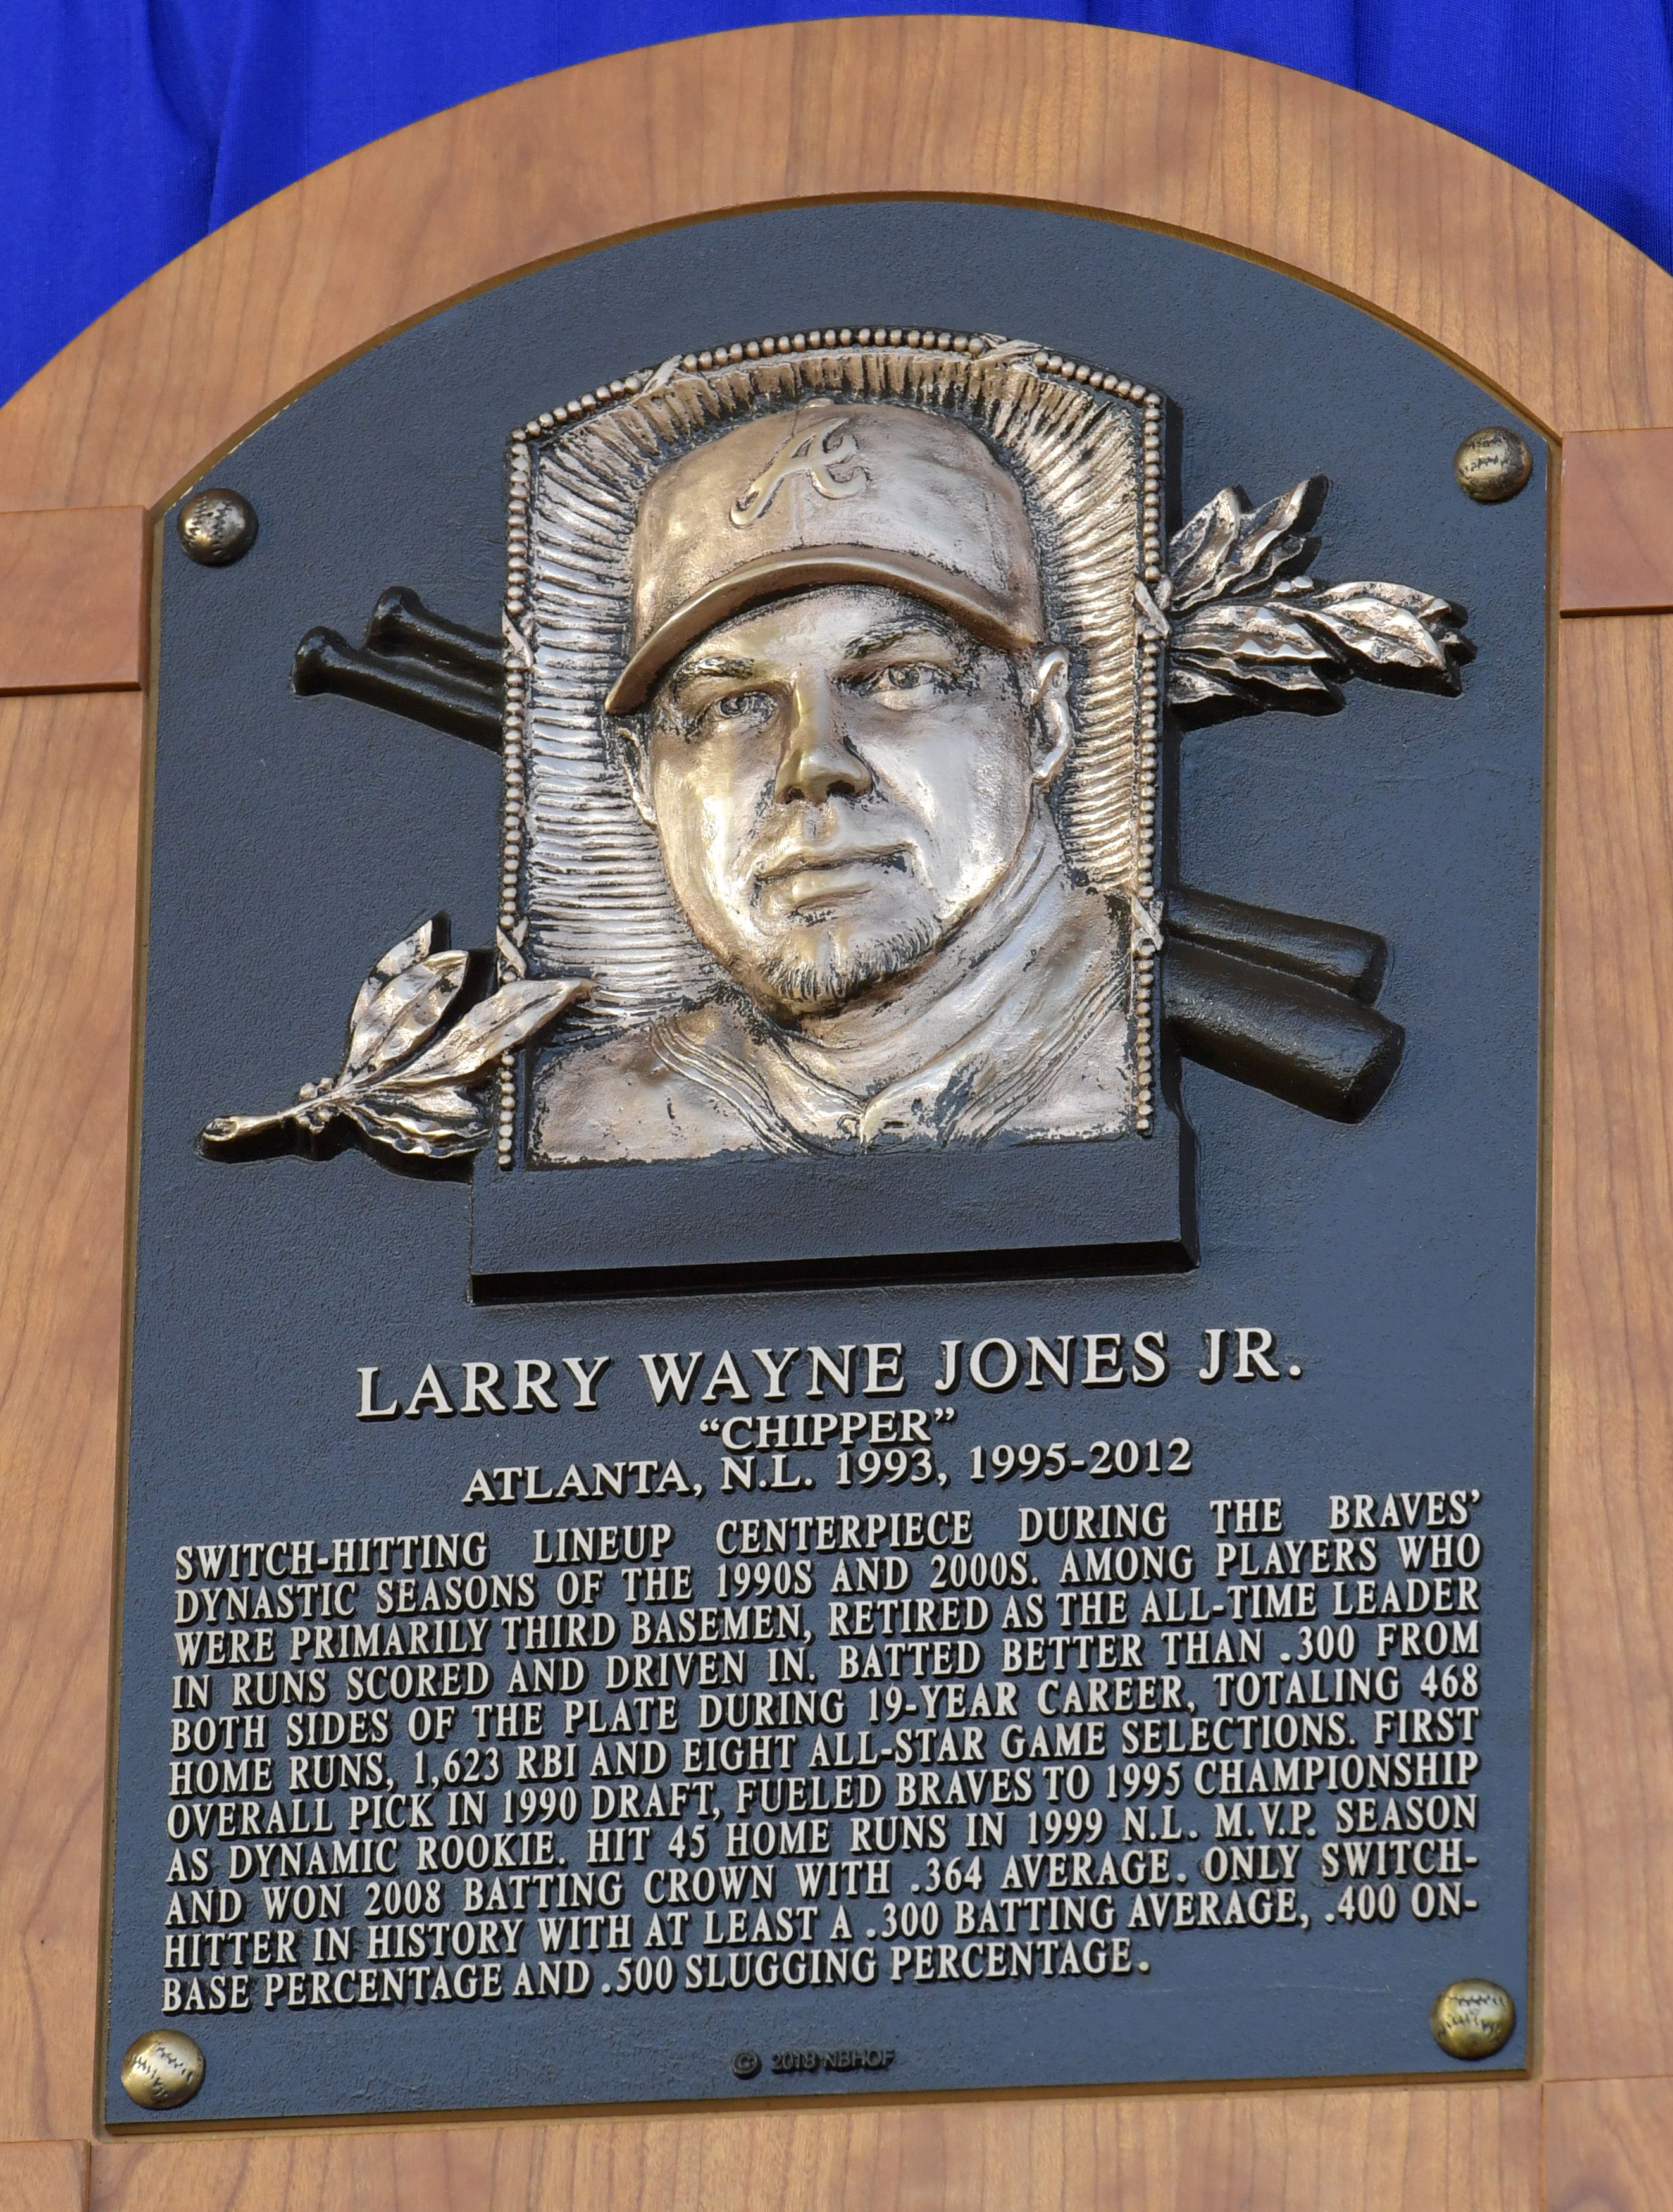 Chipper Jones talks Hall of Fame, Stetson baseball, Super Bowl?